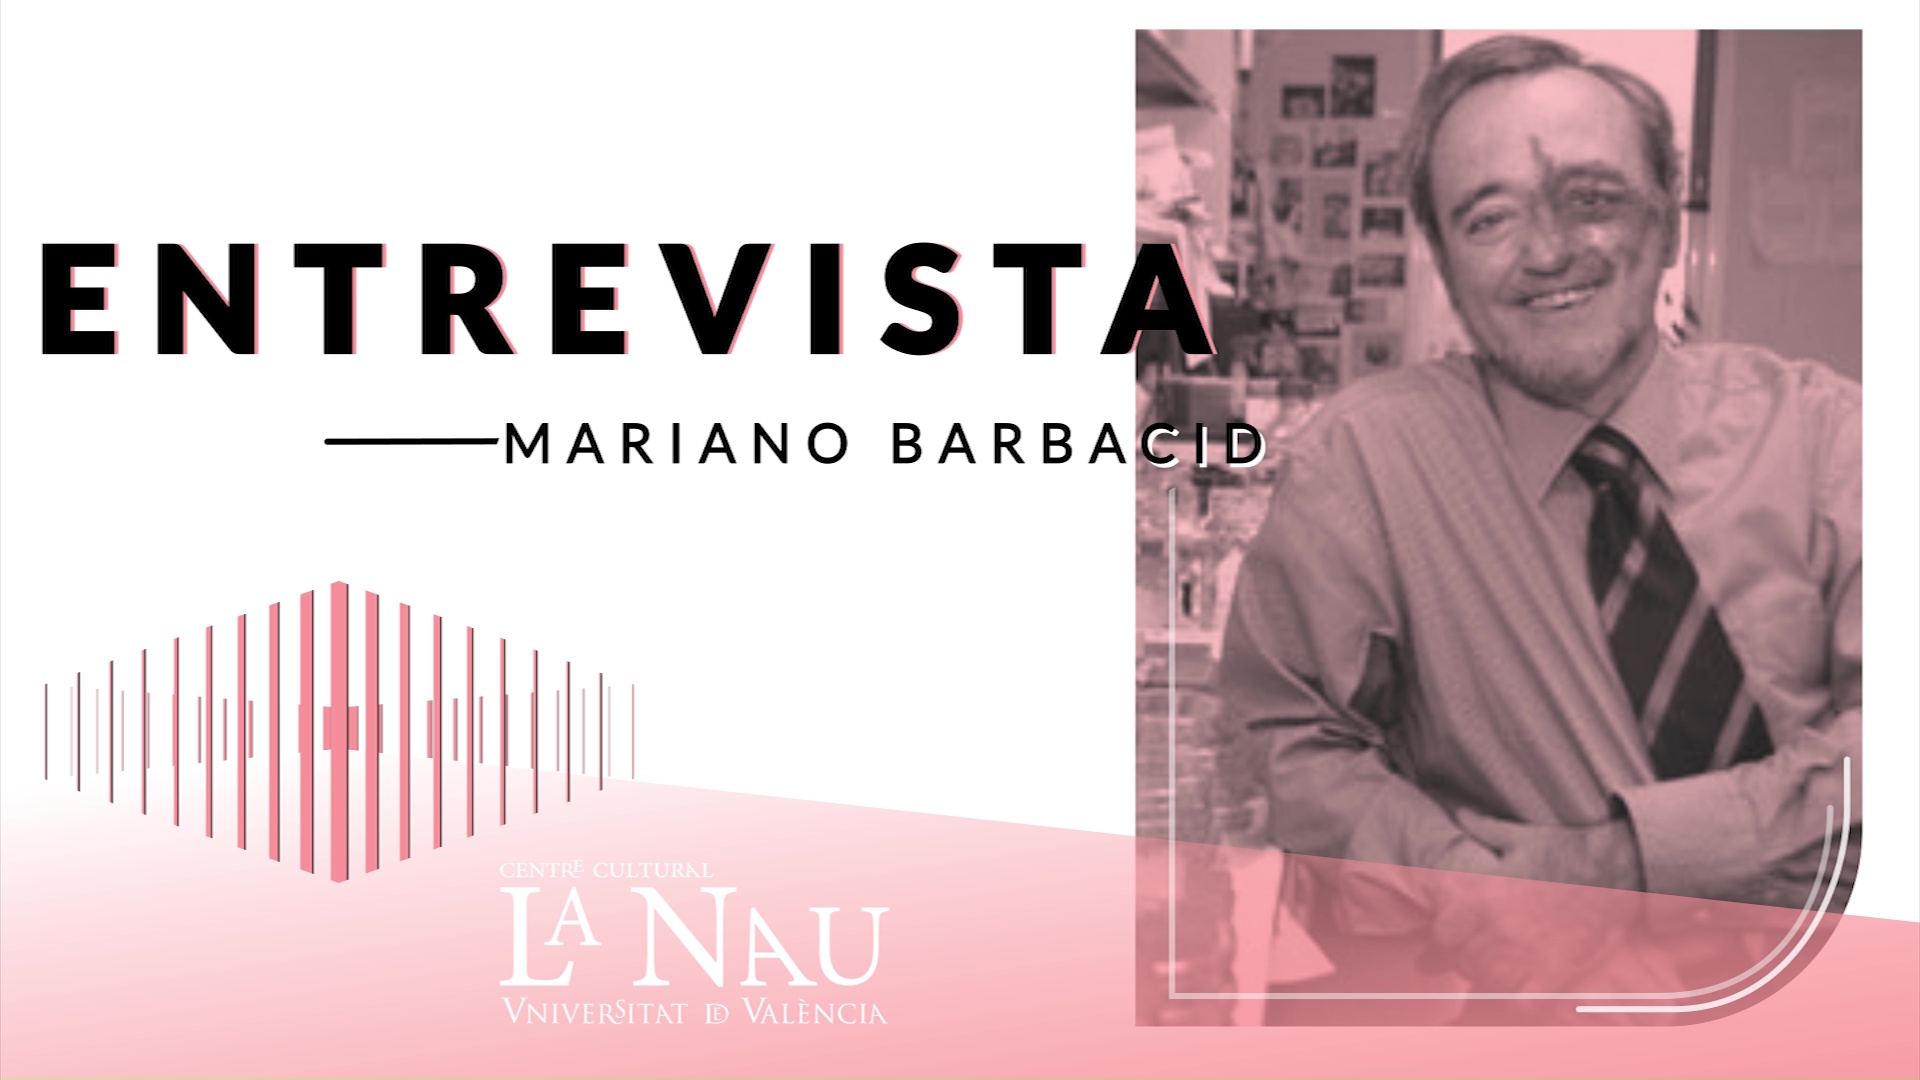 Entrevista a La Nau. Mariano Barbacid.